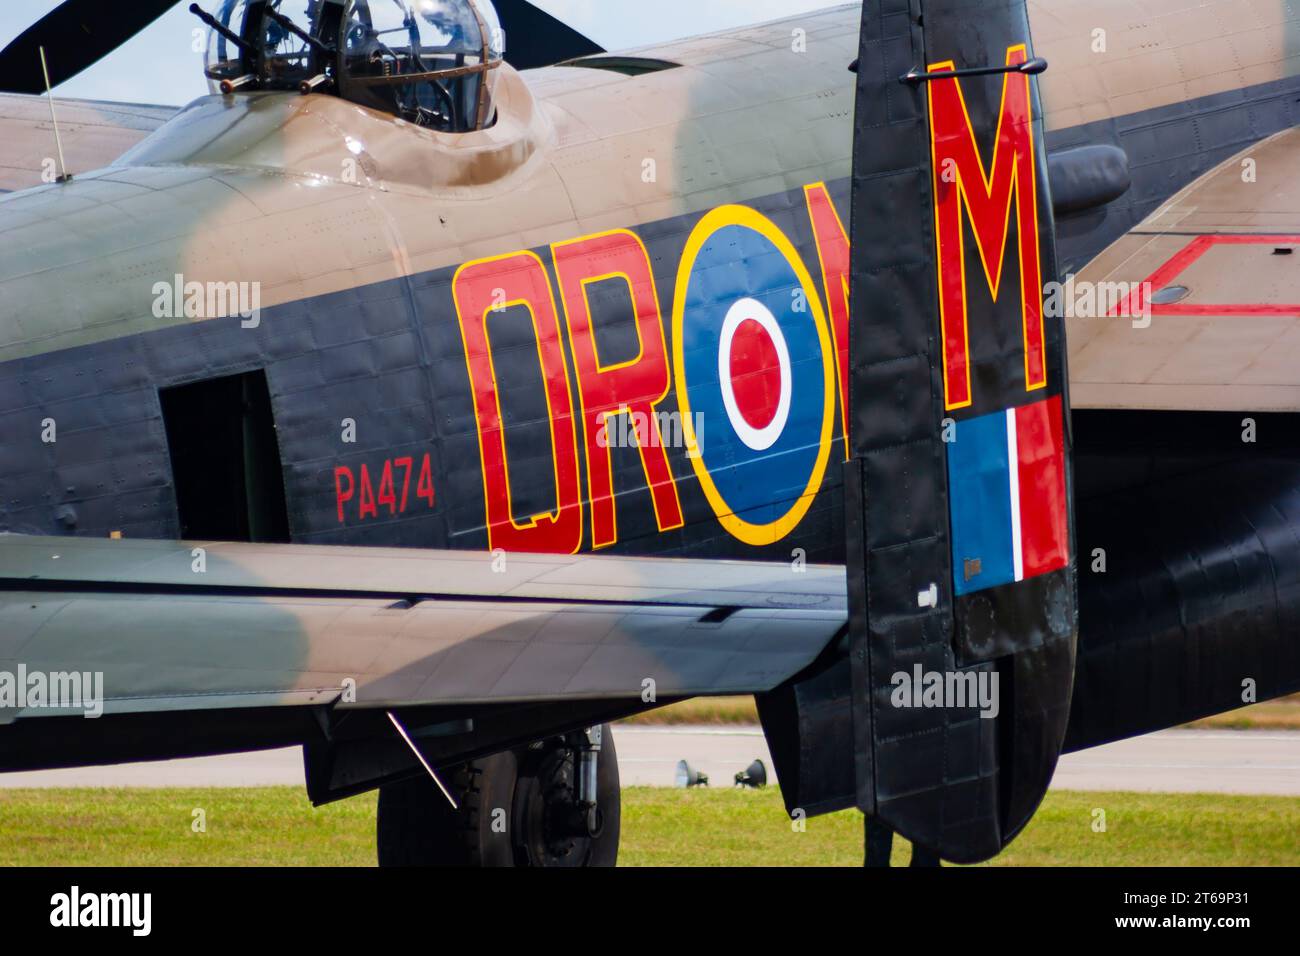 Détail de l'arrière, vol de la Royal Air Force Battle of Britain, WW2 Avro Lancaster PA474, ville de Lincoln au RAF Waddington Airshow, 2005 Banque D'Images